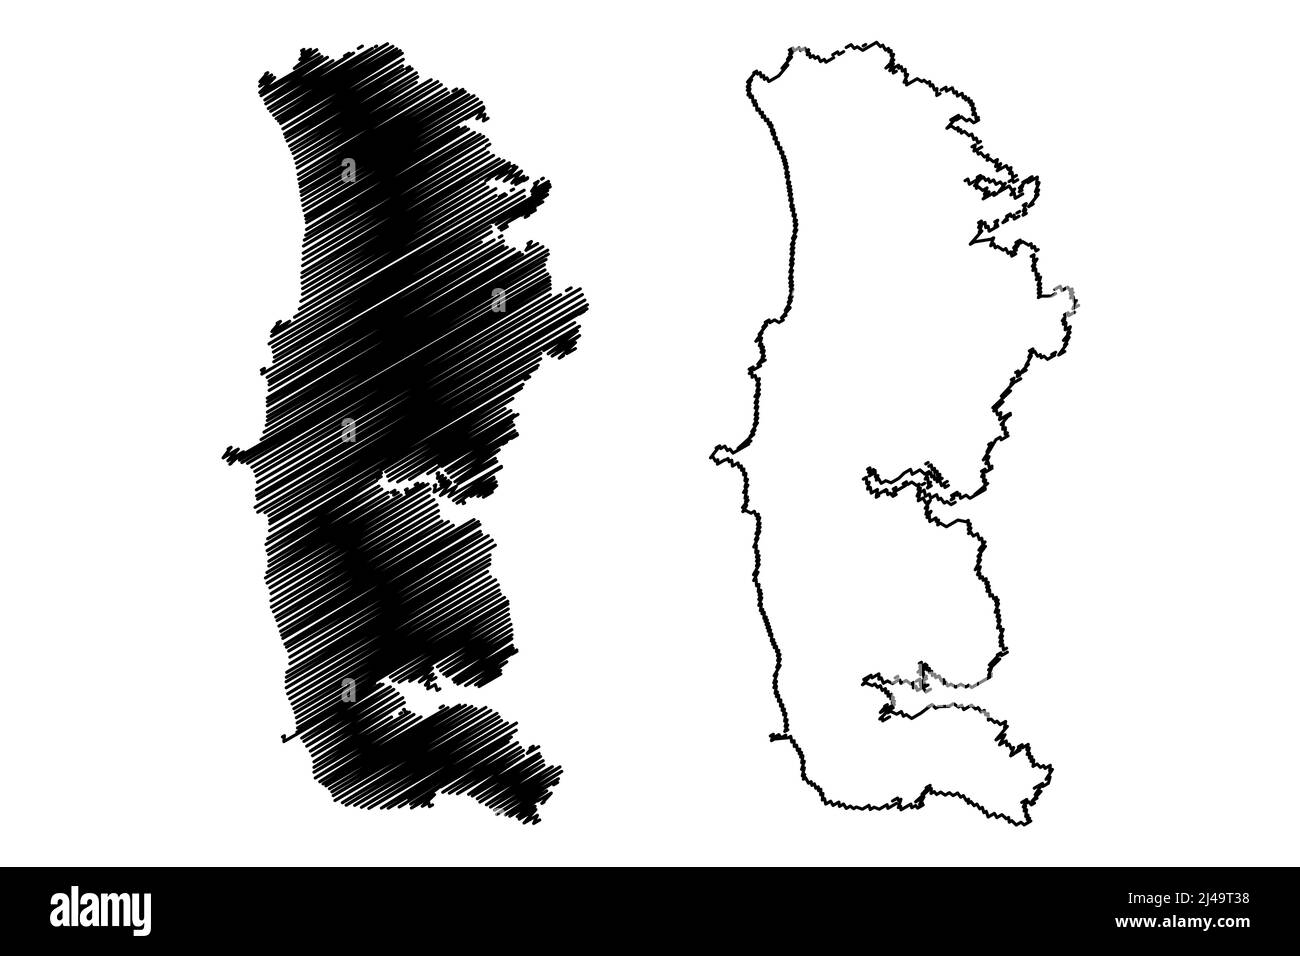 South Uist Island (Vereinigtes Königreich von Großbritannien und Nordirland, Schottland, Äußere Hebriden) Kartenvektordarstellung, Scribble Sketch Isle of so Stock Vektor